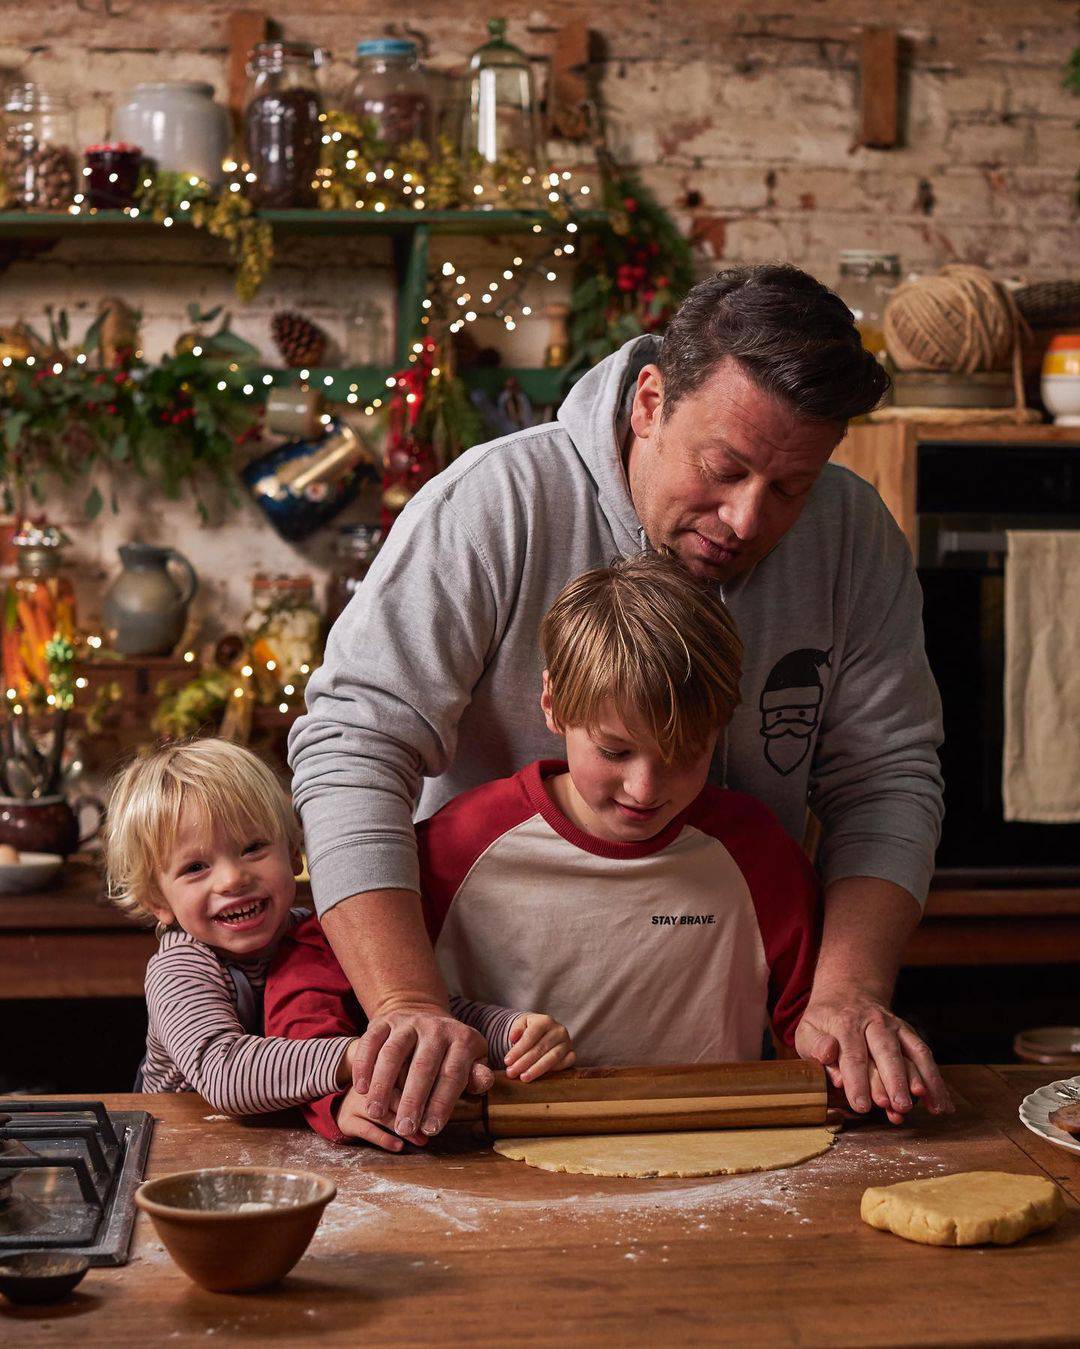 Kakvi crtići, samo kuhača: Djeci će sin Jamieja Olivera pokazati sve potrebne kulinarske trikove